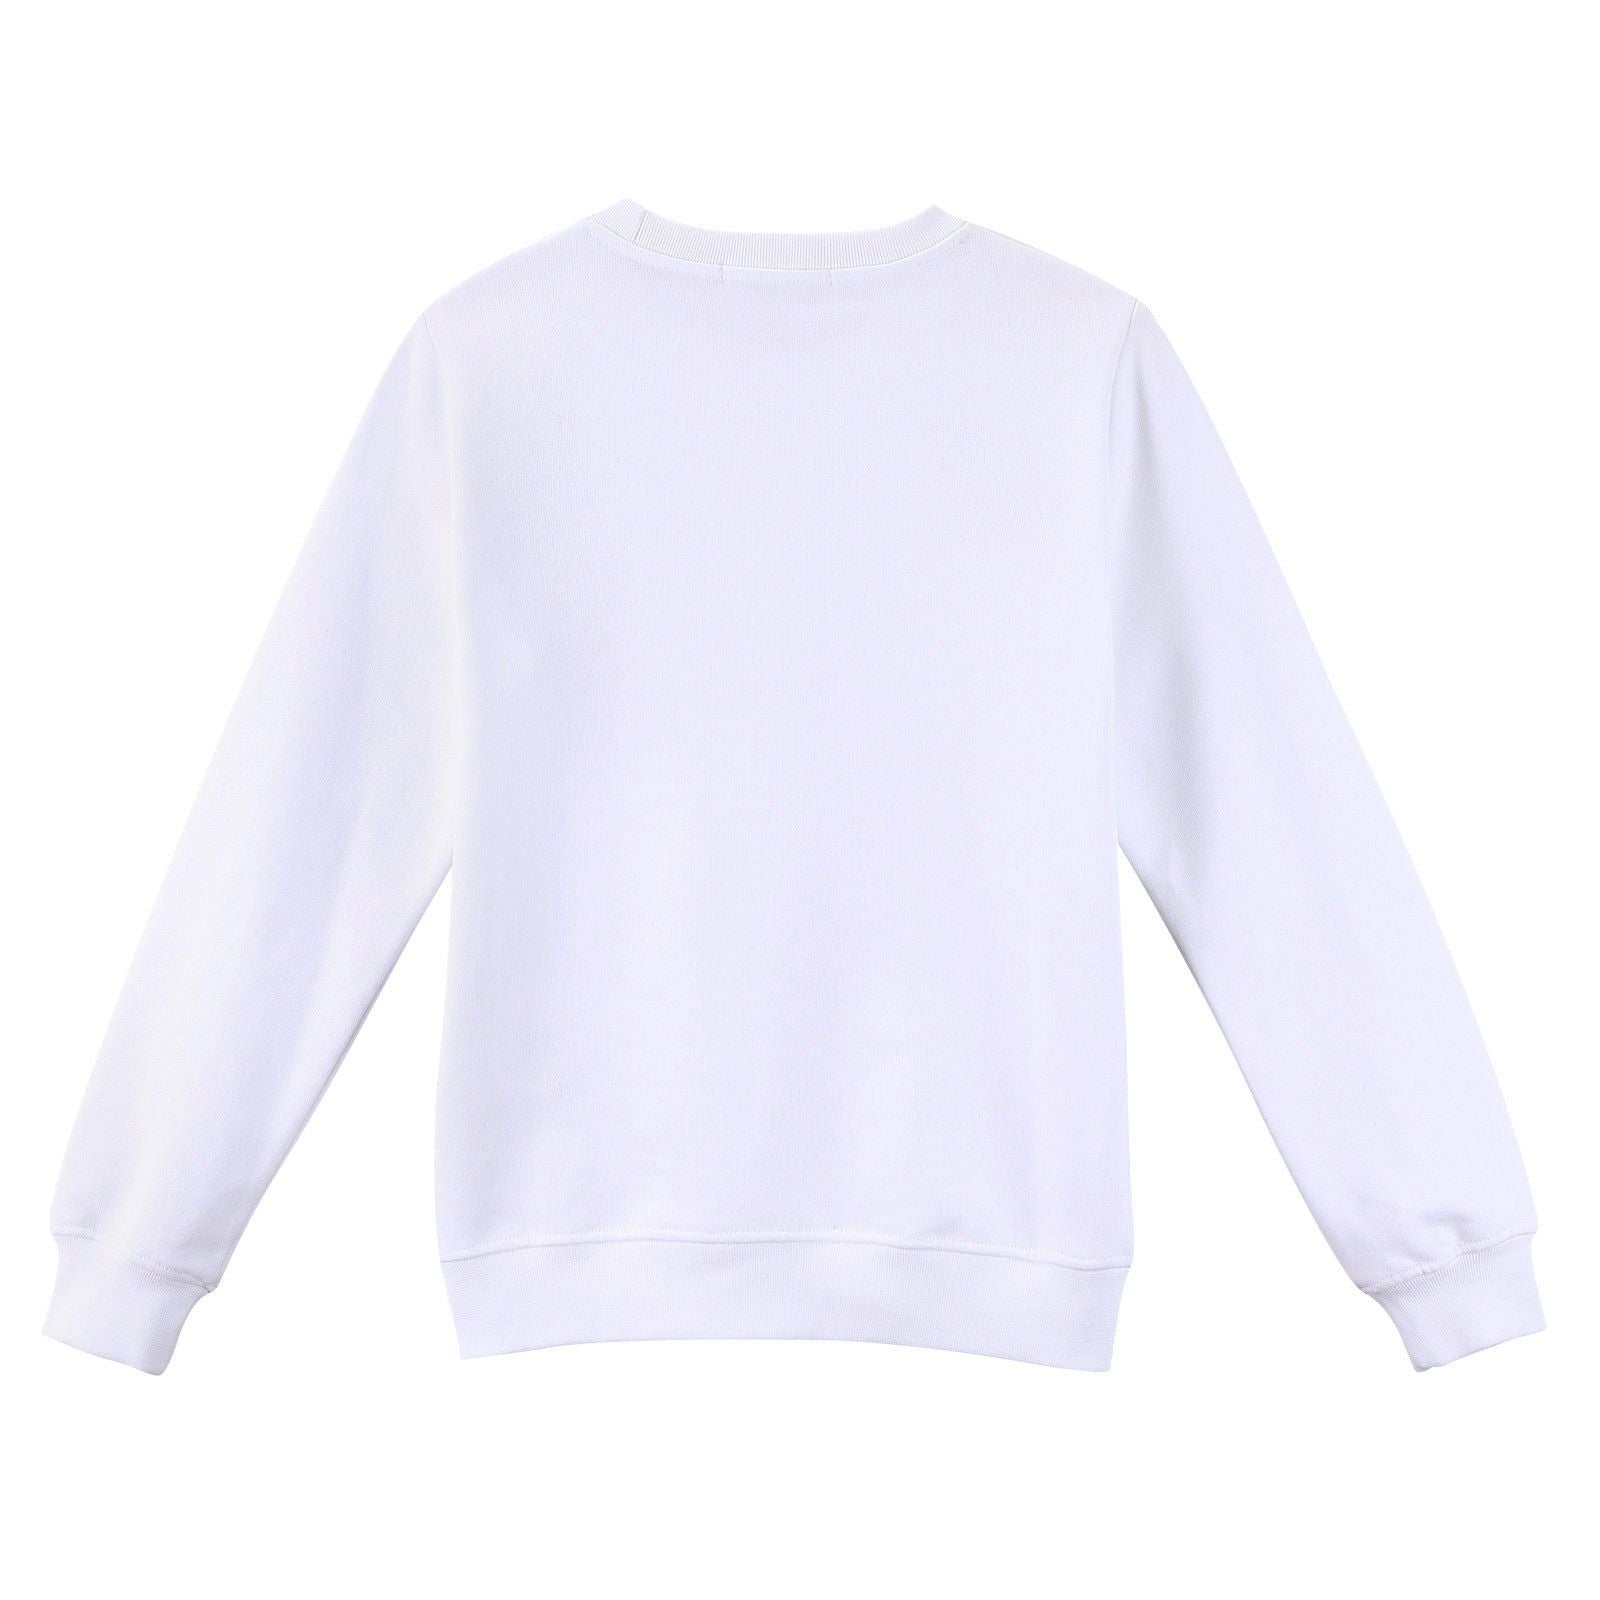 Girls White Embroidered Birds Cotton Sweatshirt - CÉMAROSE | Children's Fashion Store - 2